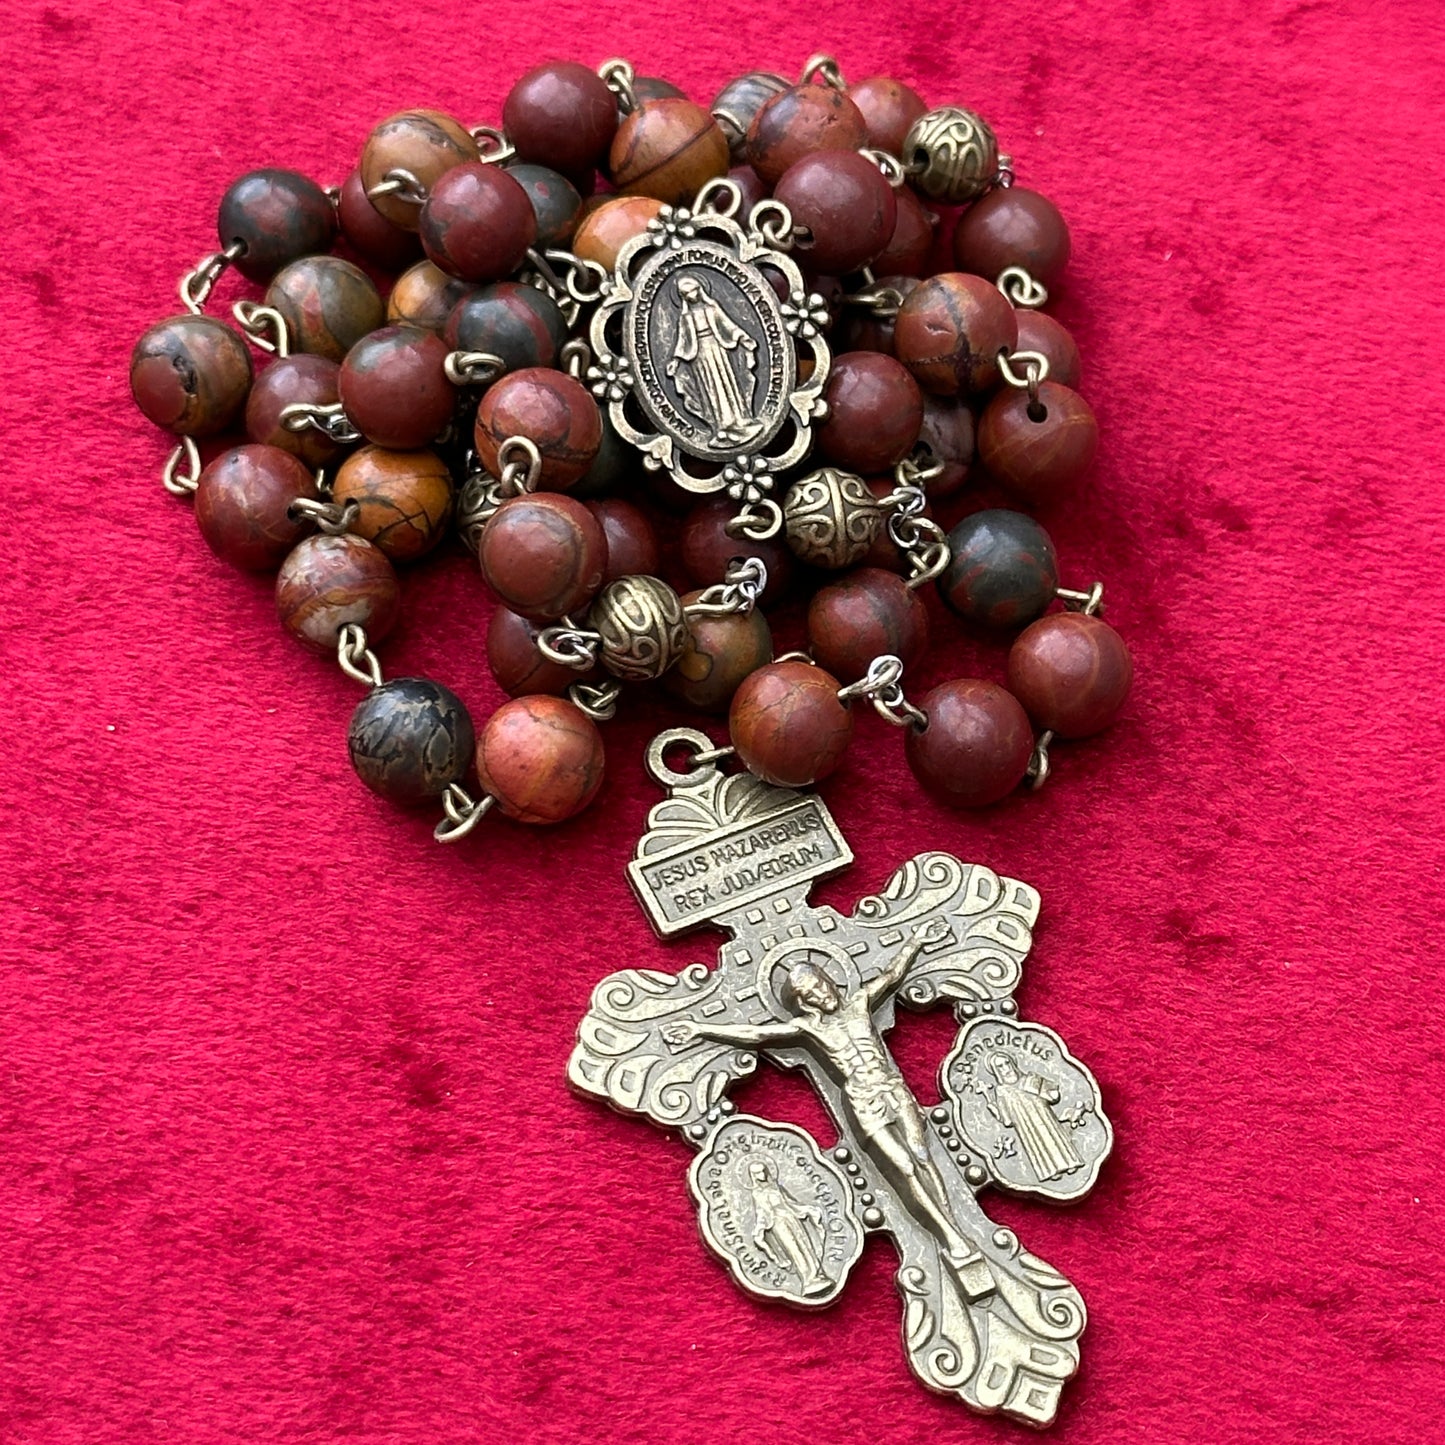 Beautiful luxury Catholic Traditional Rosary Beads